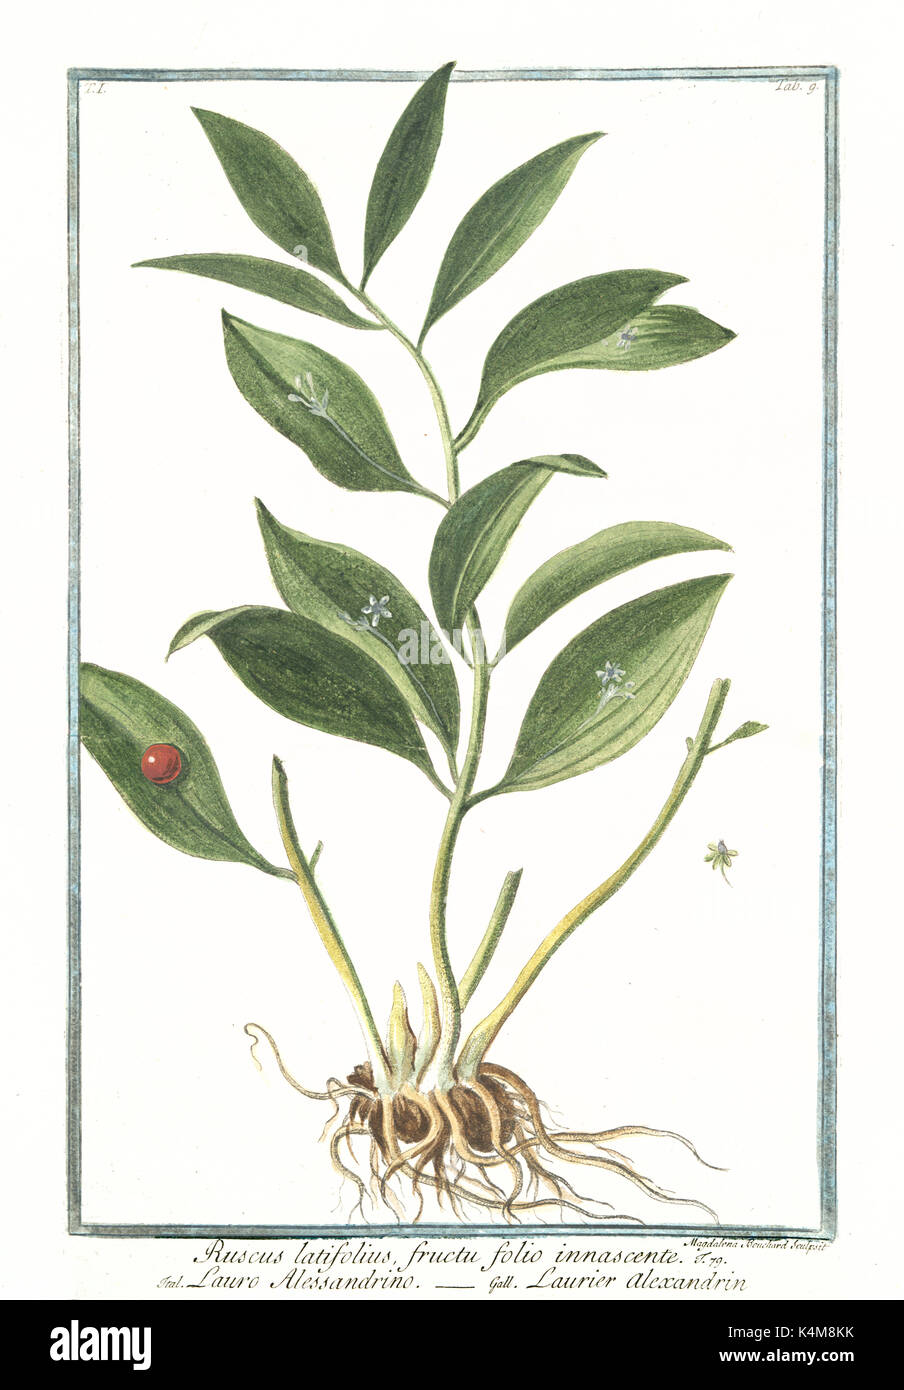 Old illustration of Ruscus latifolius fructu folio innascente. By G. Bonelli on Hortus Romanus, publ. N. Martelli, Rome, 1772 – 93 Stock Photo